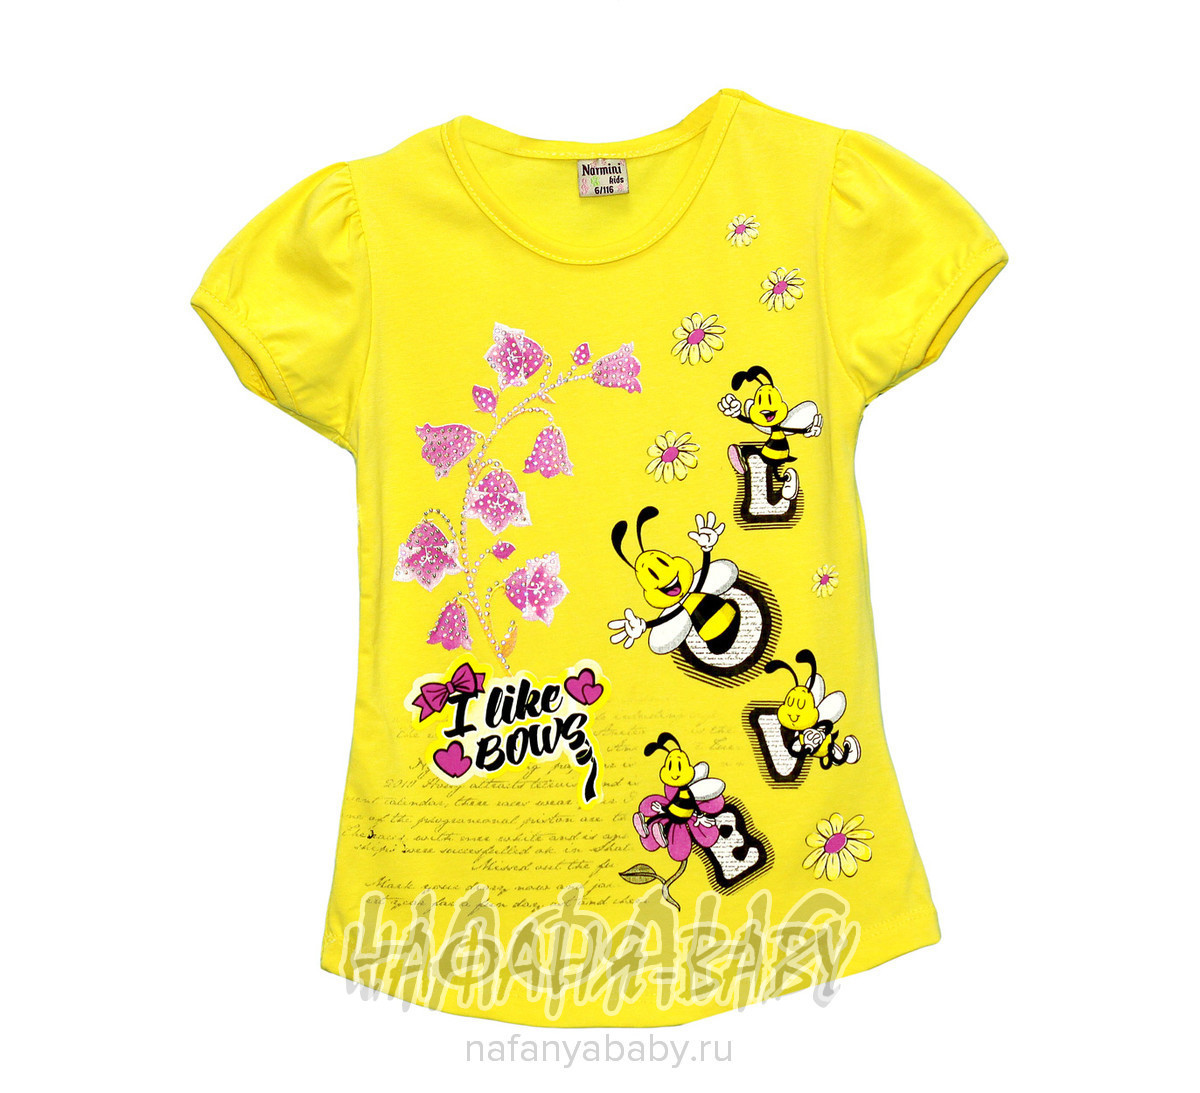 Детская футболка NARMINI, купить в интернет магазине Нафаня. арт: 5586.